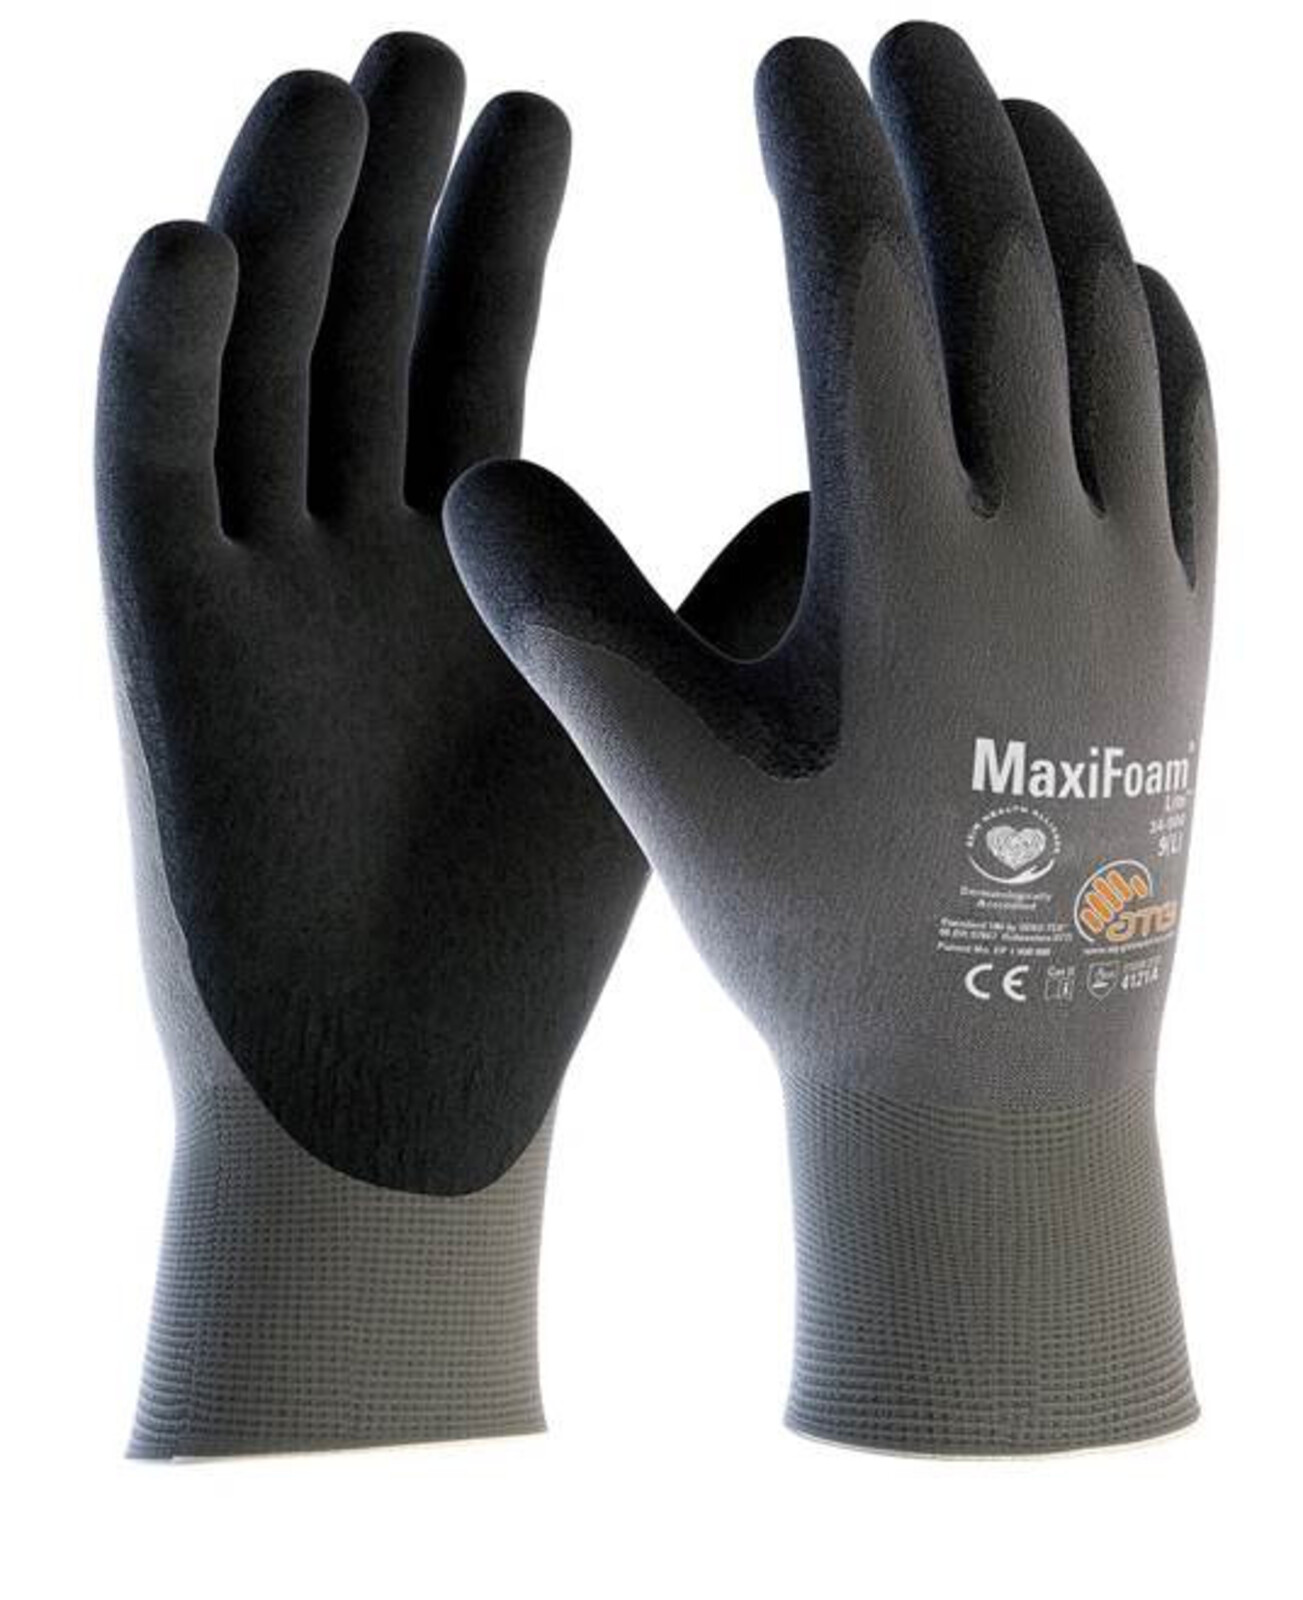 Pracovné rukavice ATG MaxiFoam LITE 34-900 (12 párov) - veľkosť: 8/M, farba: sivá